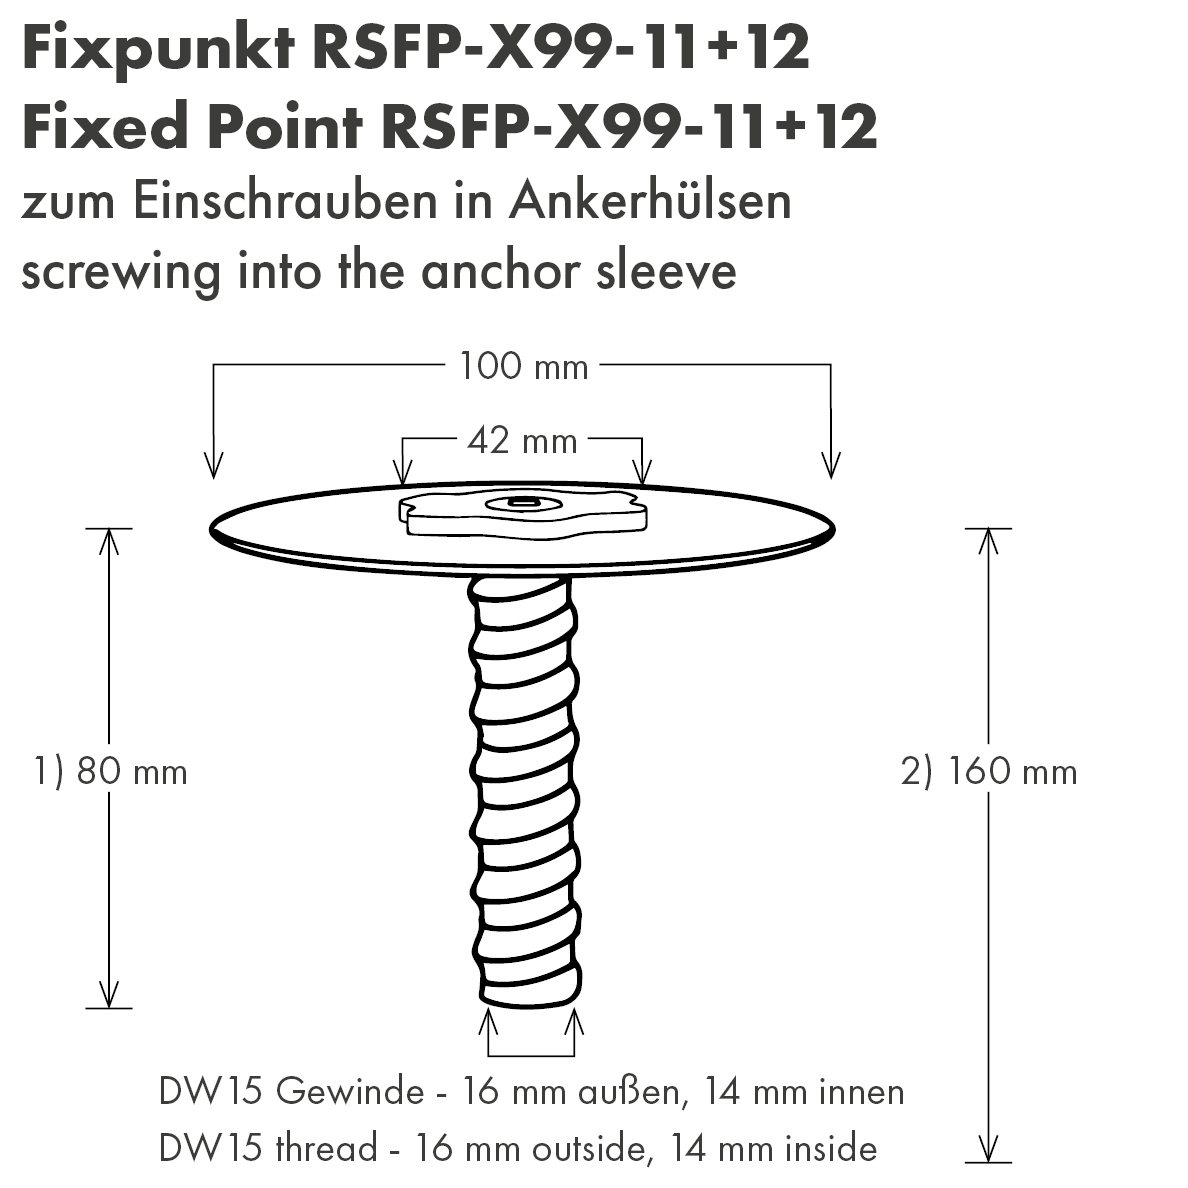 Fixpunkt für Ankerhülse mit DW15-Gewinde, 80 mm 